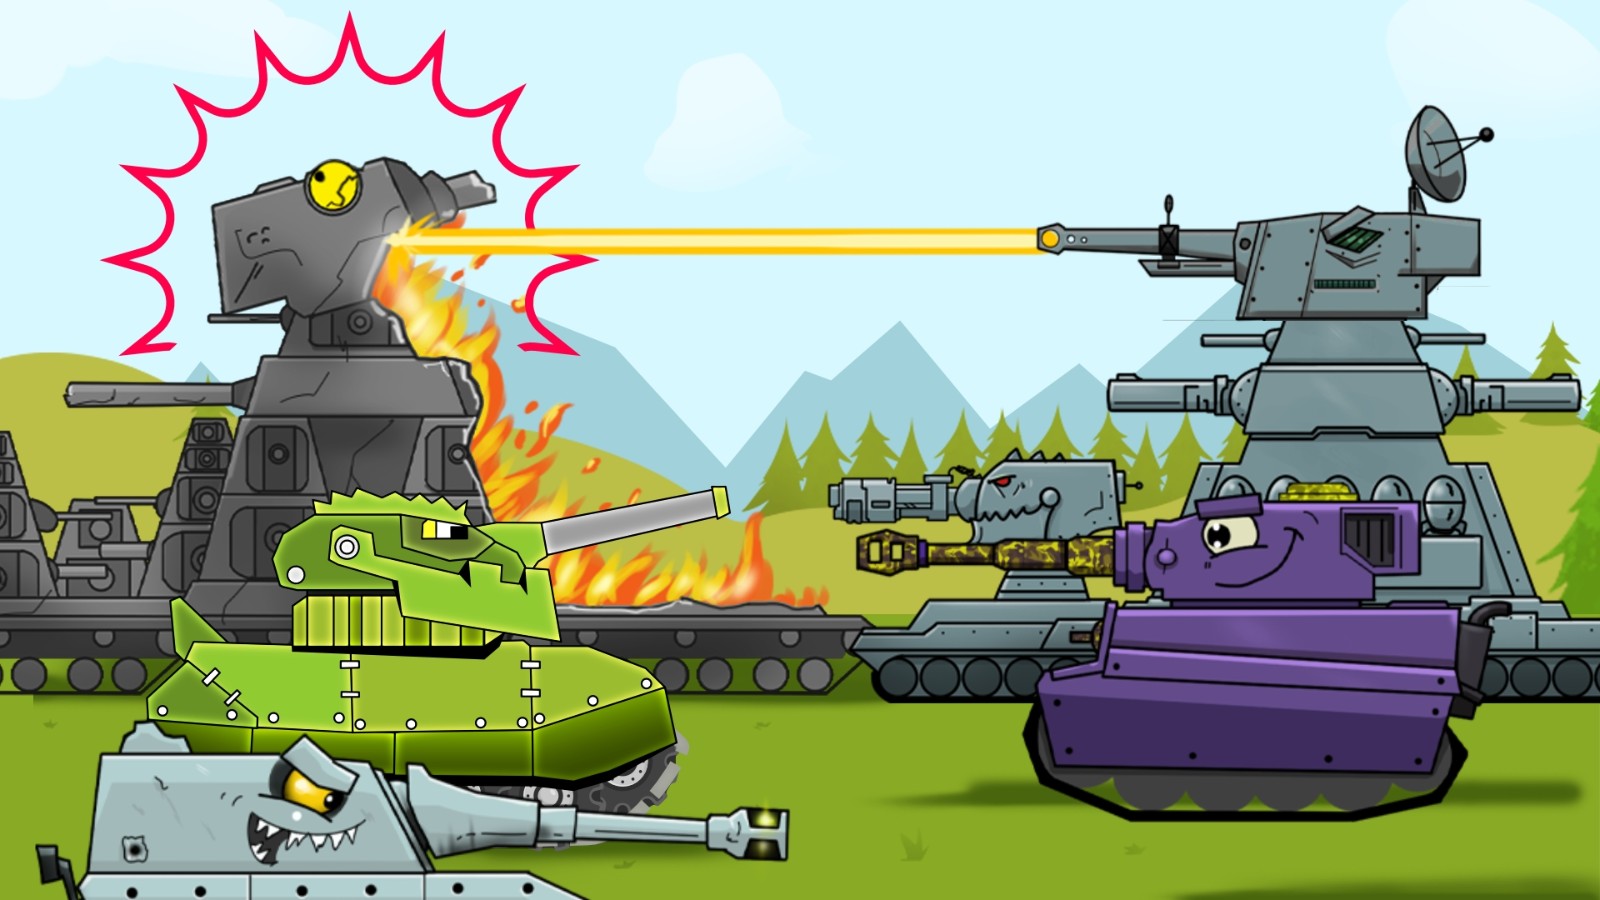 坦克进化2游戏最新版